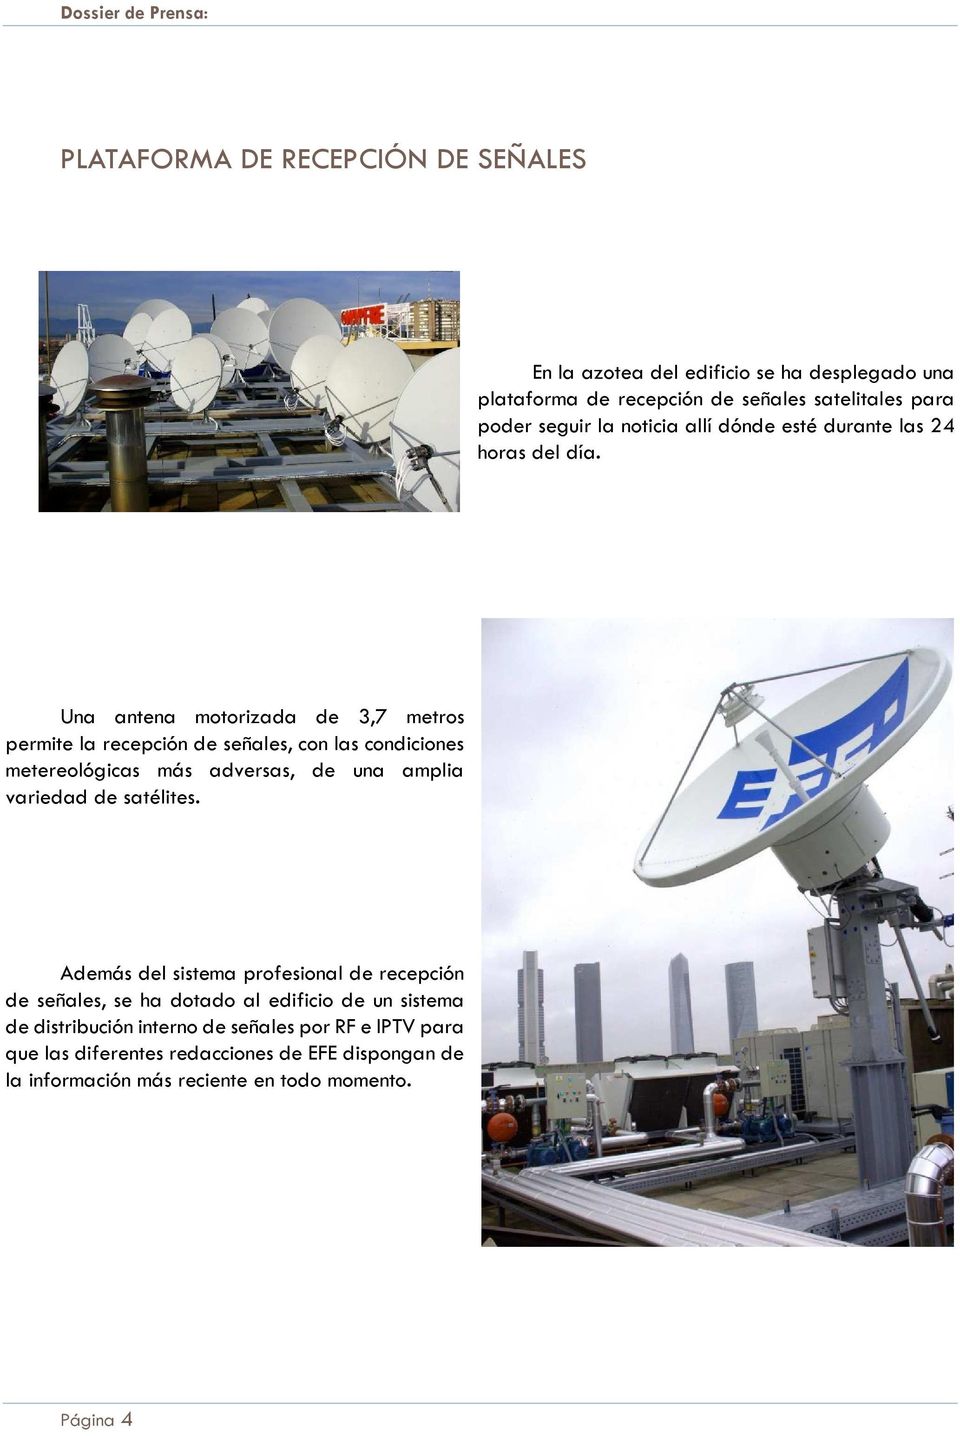 Una antena motorizada de 3,7 metros permite la recepción de señales, con las condiciones metereológicas más adversas, de una amplia variedad de